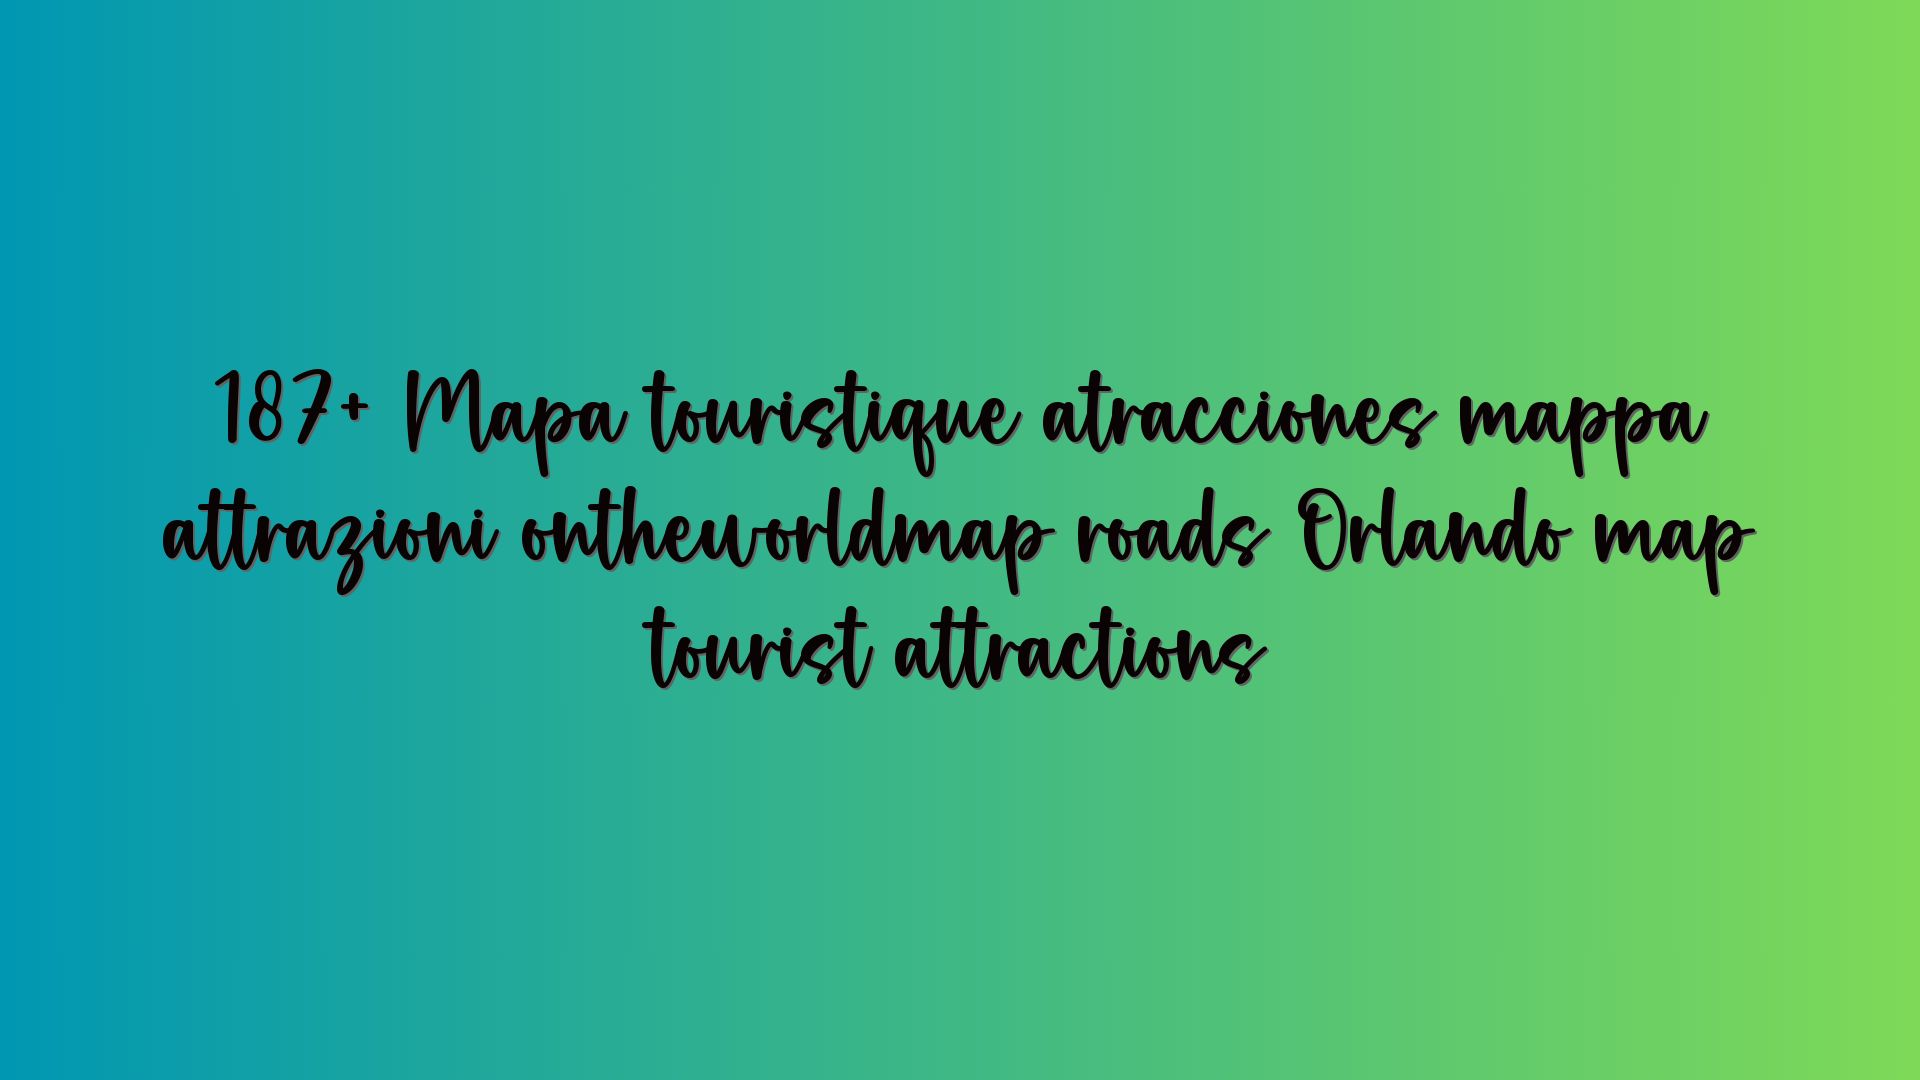 187+ Mapa touristique atracciones mappa attrazioni ontheworldmap roads Orlando map tourist attractions